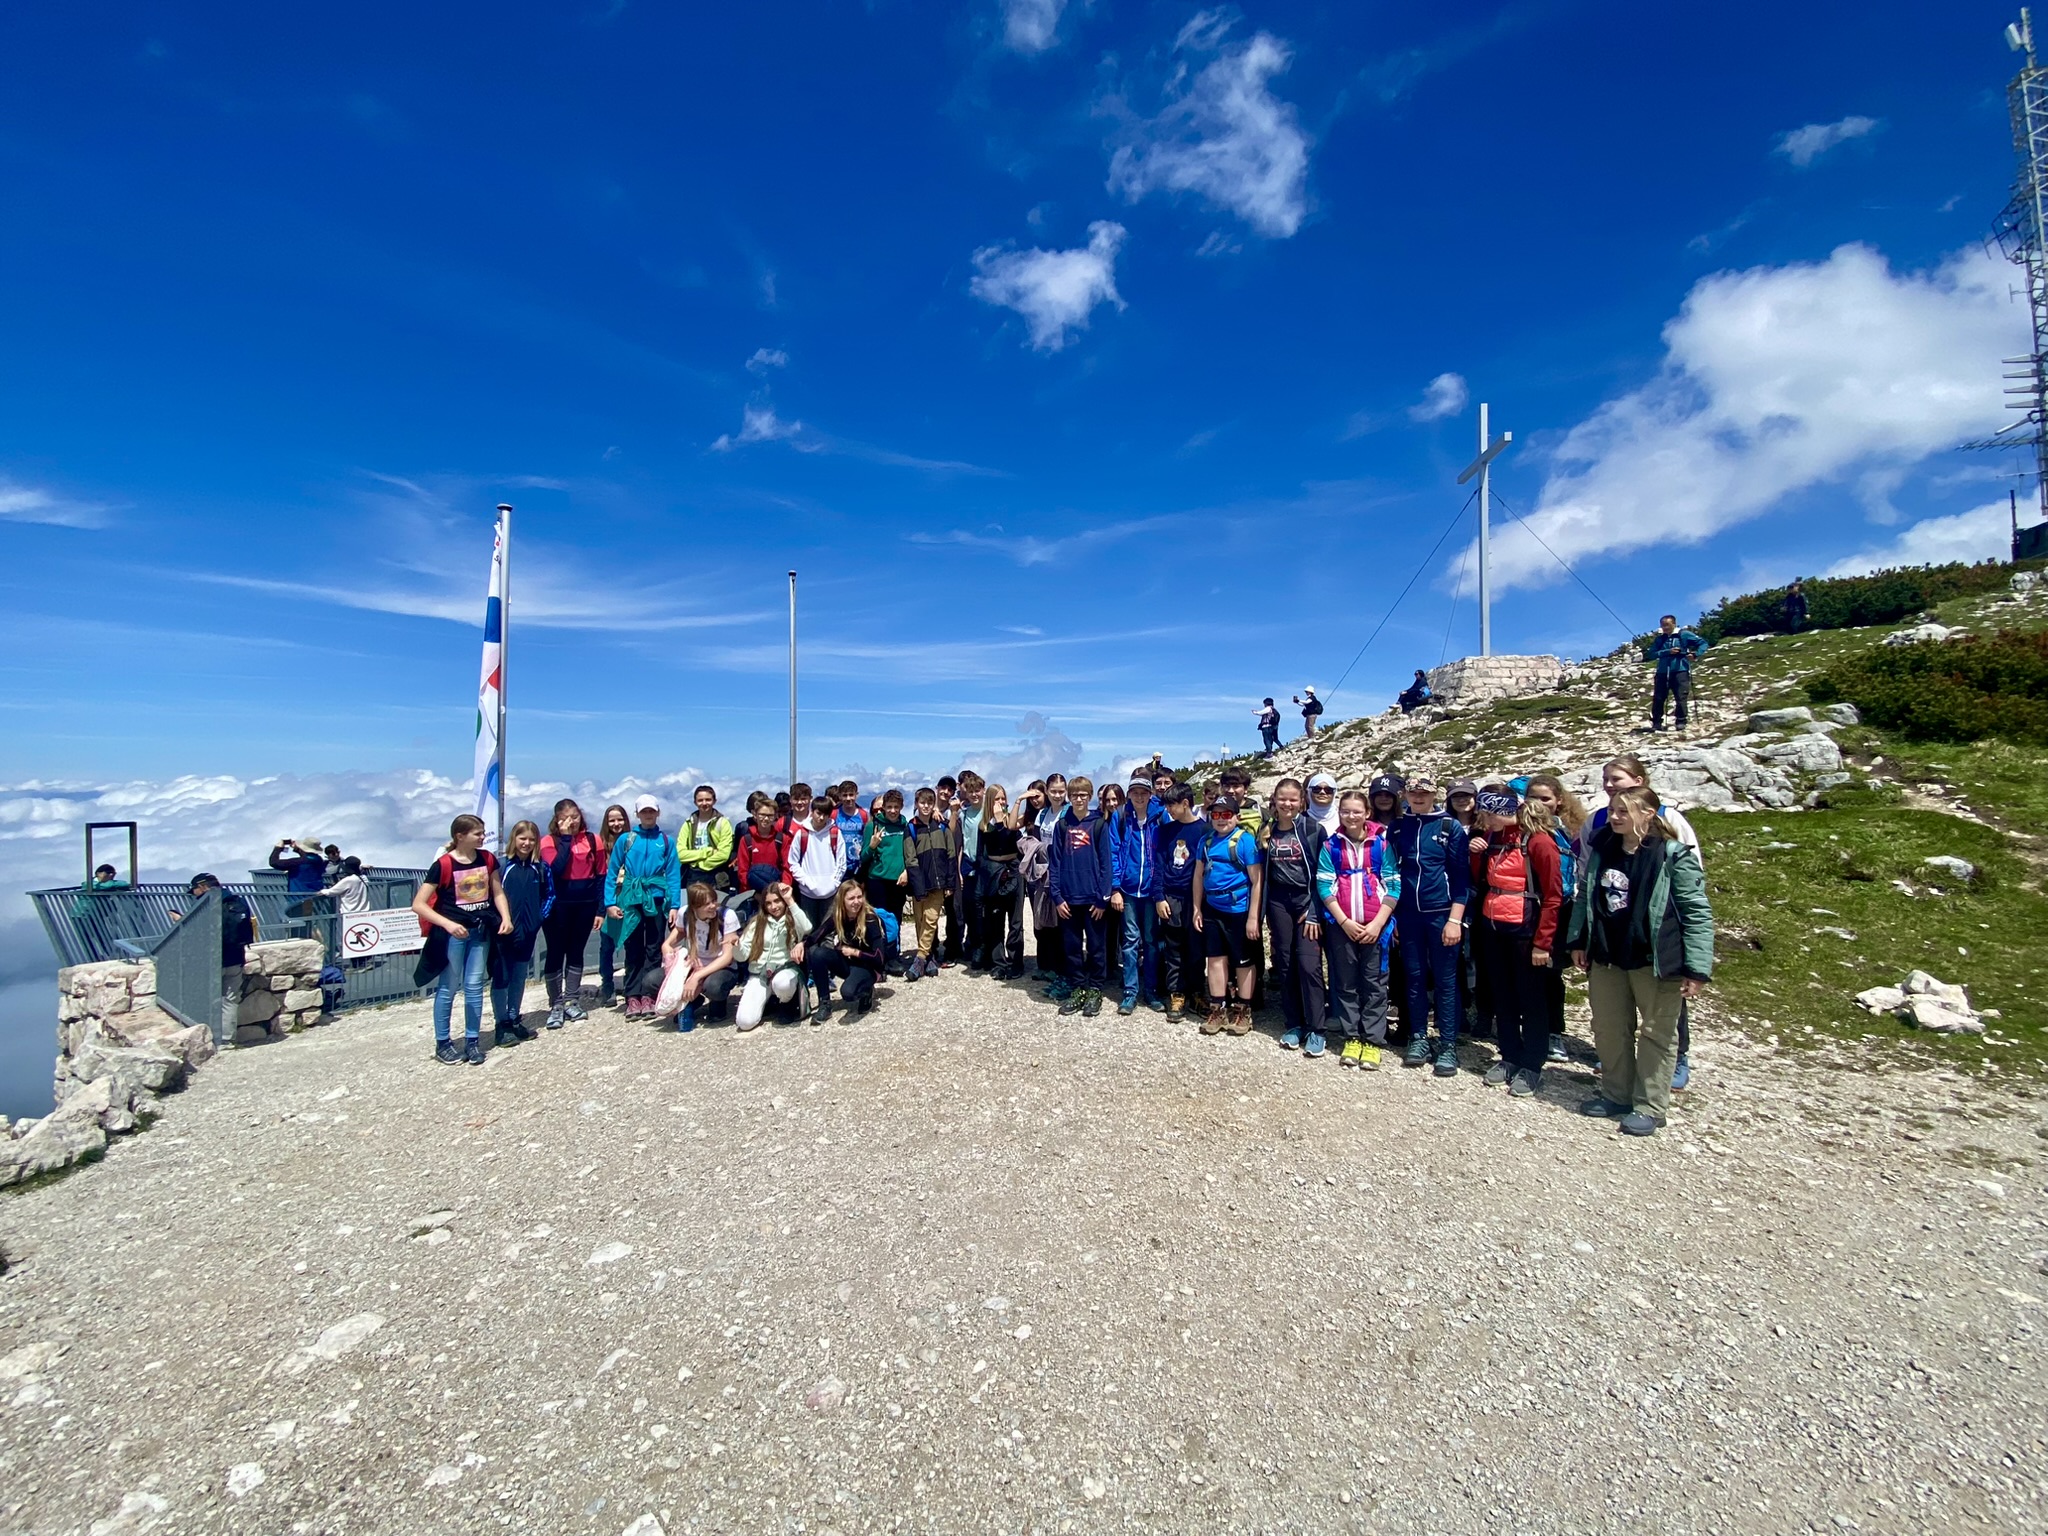 Eine Schülergruppe steht bei blauem Himmel in einem alpinen Szenario